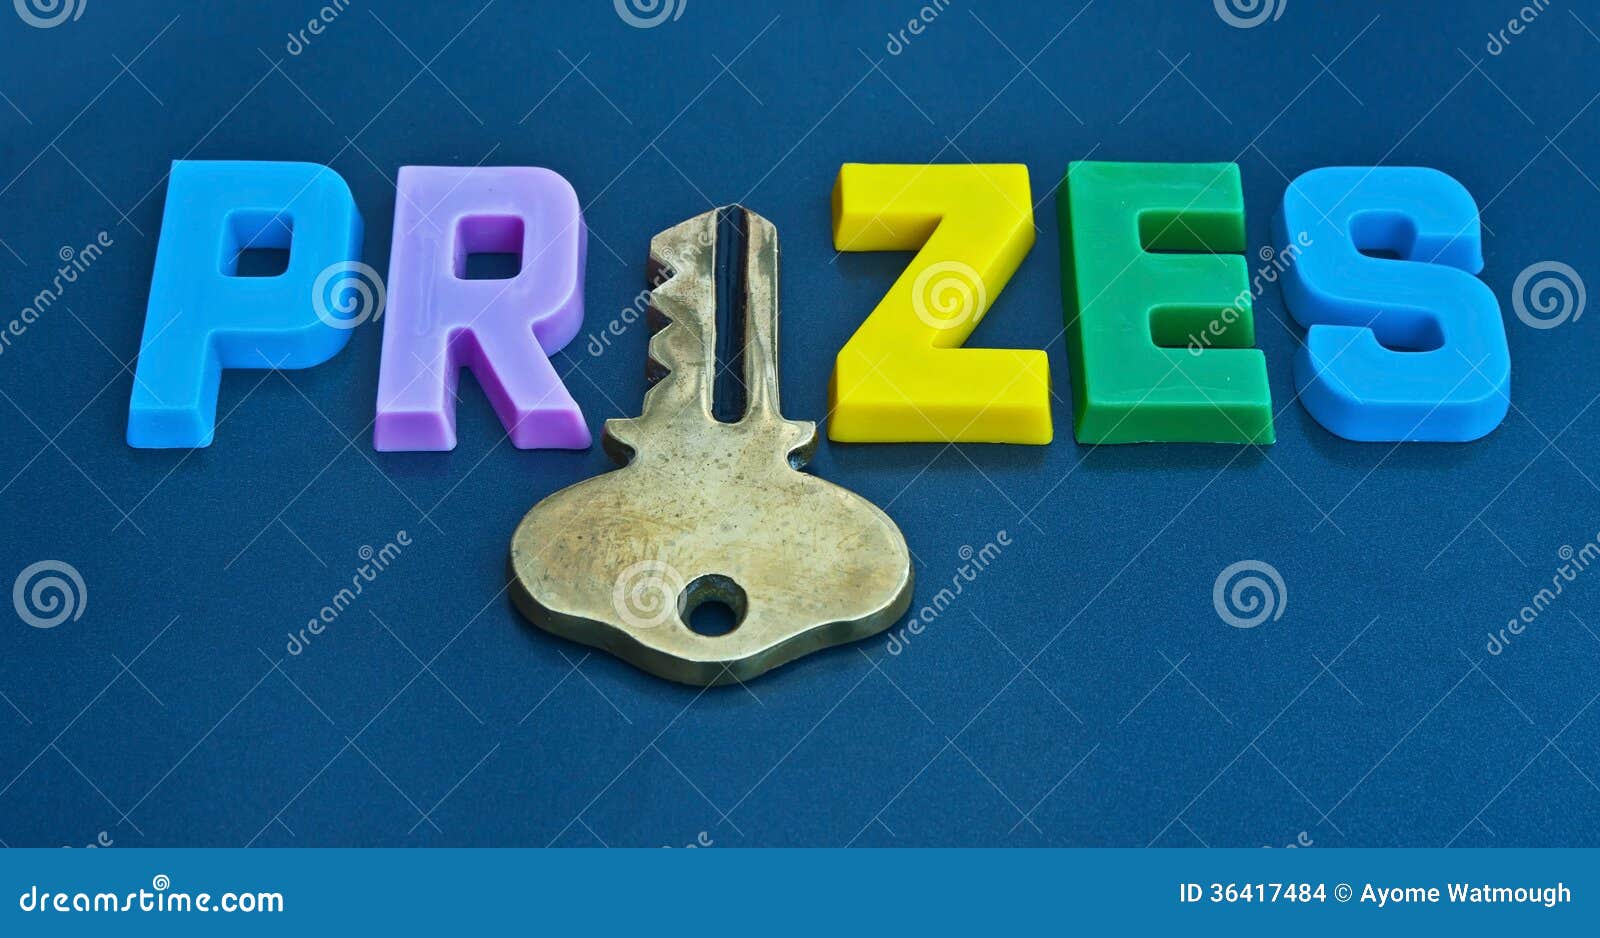 key to prizes